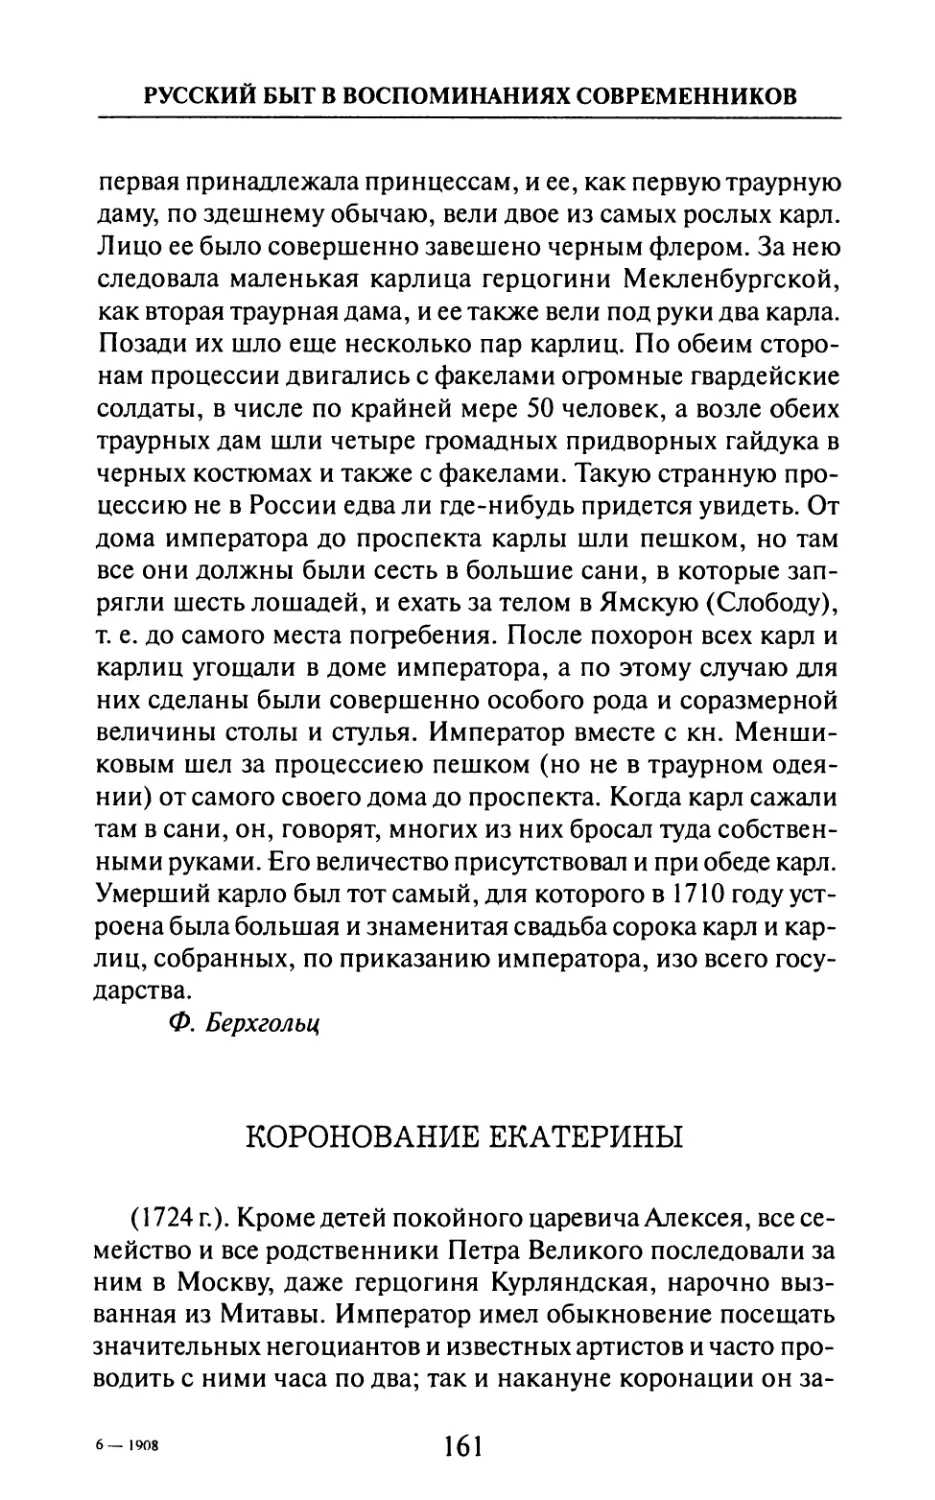 Коронование  Екатерины  —  Т.  Бассевич.  «Записки»